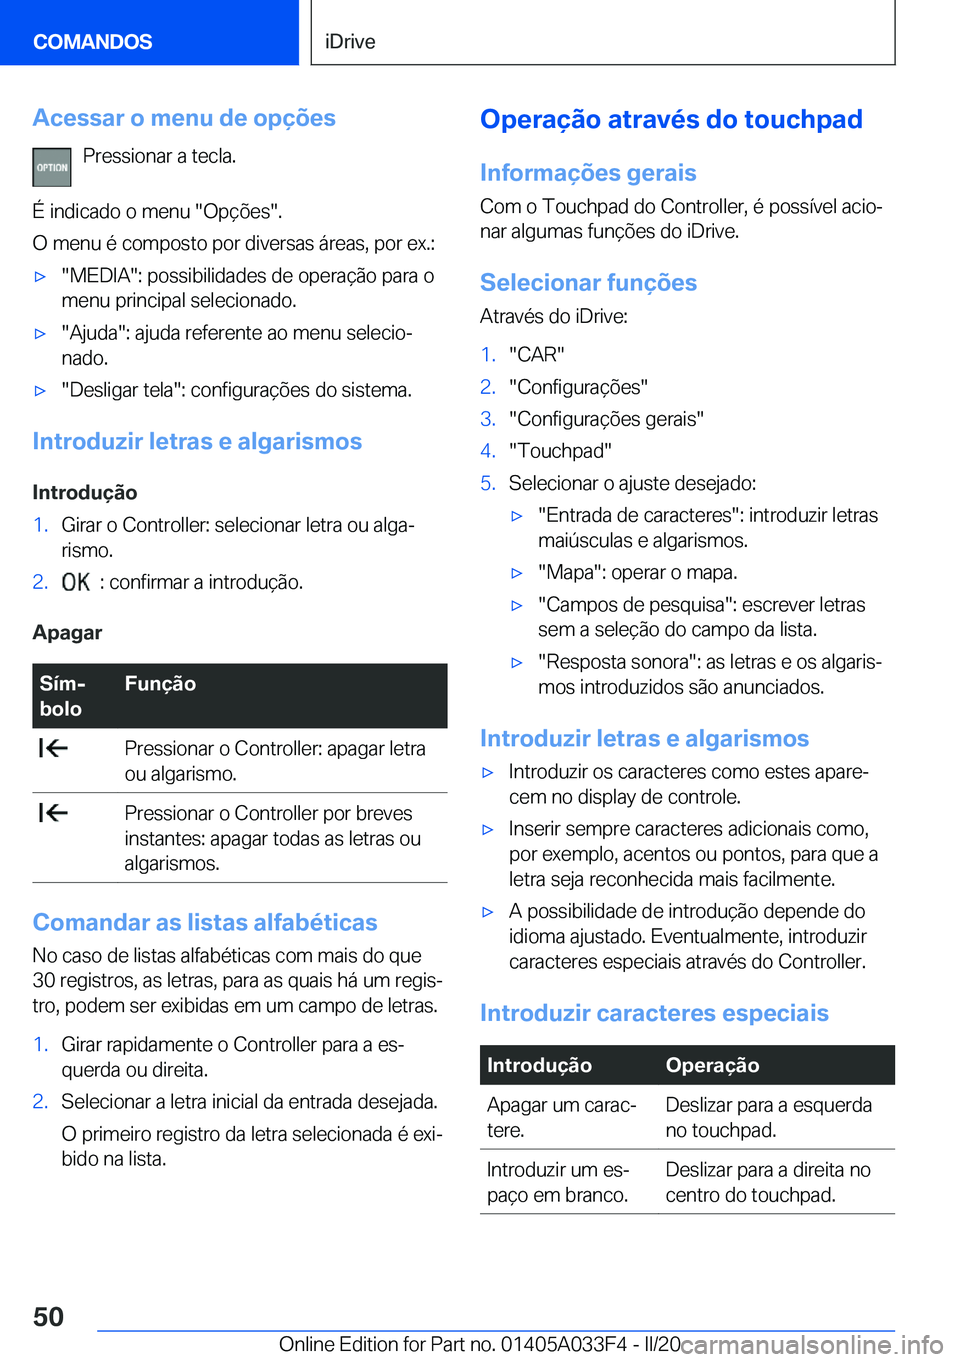 BMW X5 M 2020  Manual do condutor (in Portuguese) �A�c�e�s�s�a�r��o��m�e�n�u��d�e��o�p�